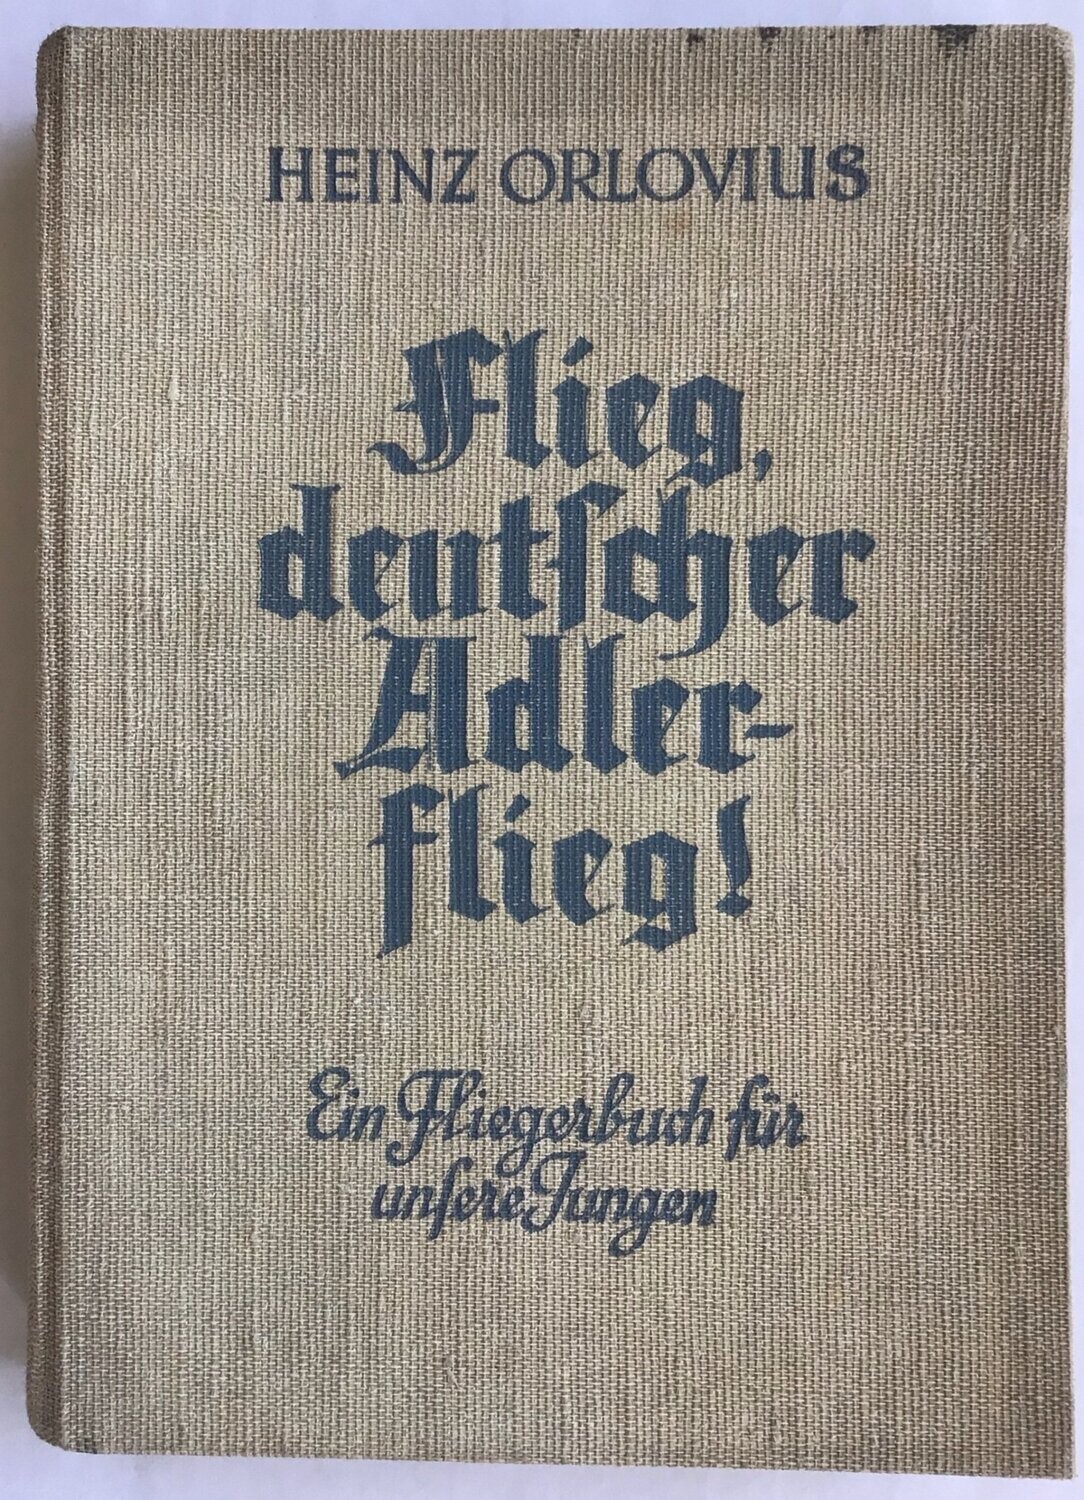 Flieg, deutscher Adler - flieg! Ganzleinenausgabe (3. Auflage) aus dem Jahr 1939